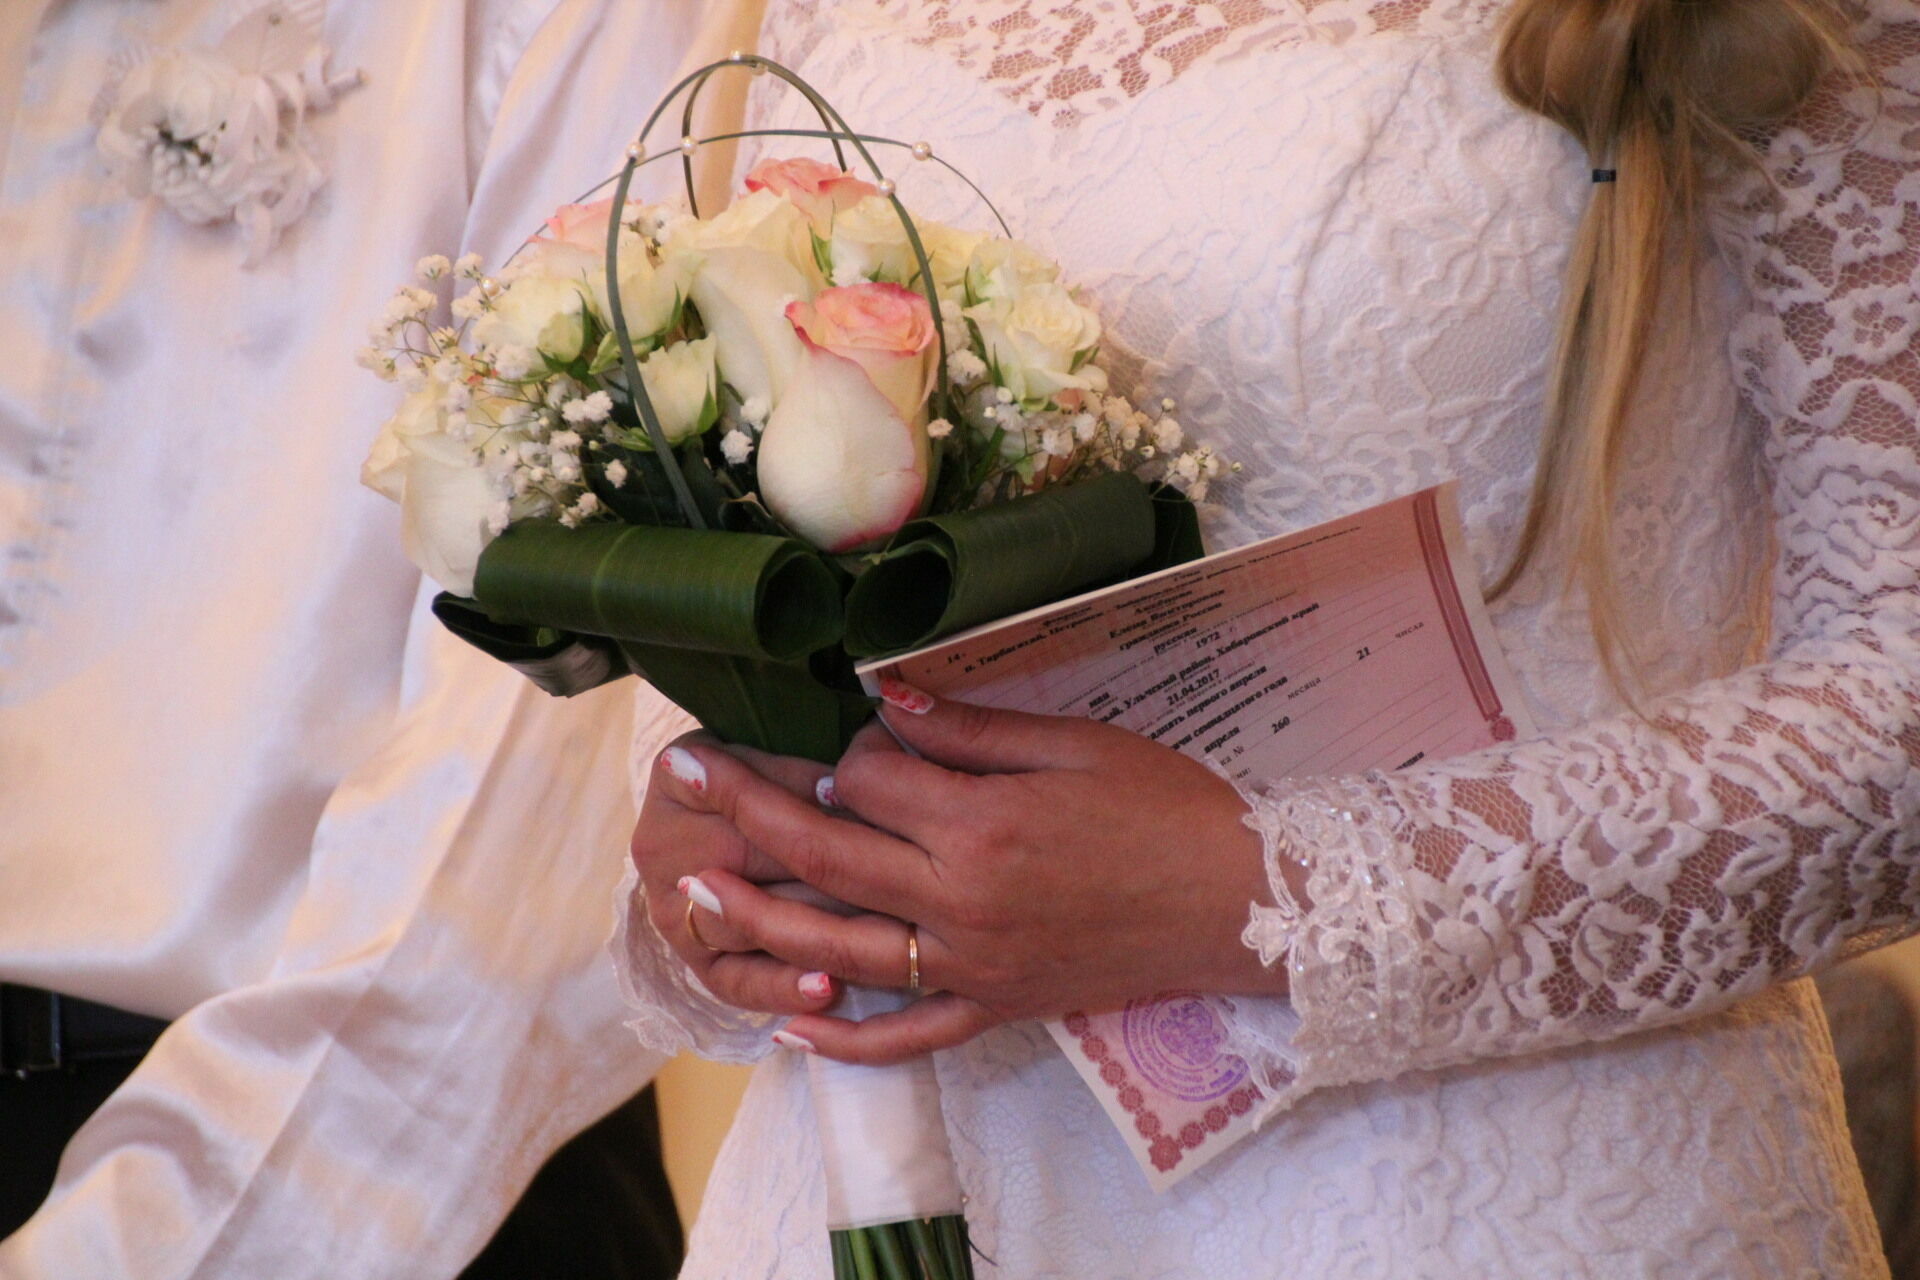 Порядка 15% нижегородок предпочитают не брать фамилию мужа при регистрации брака